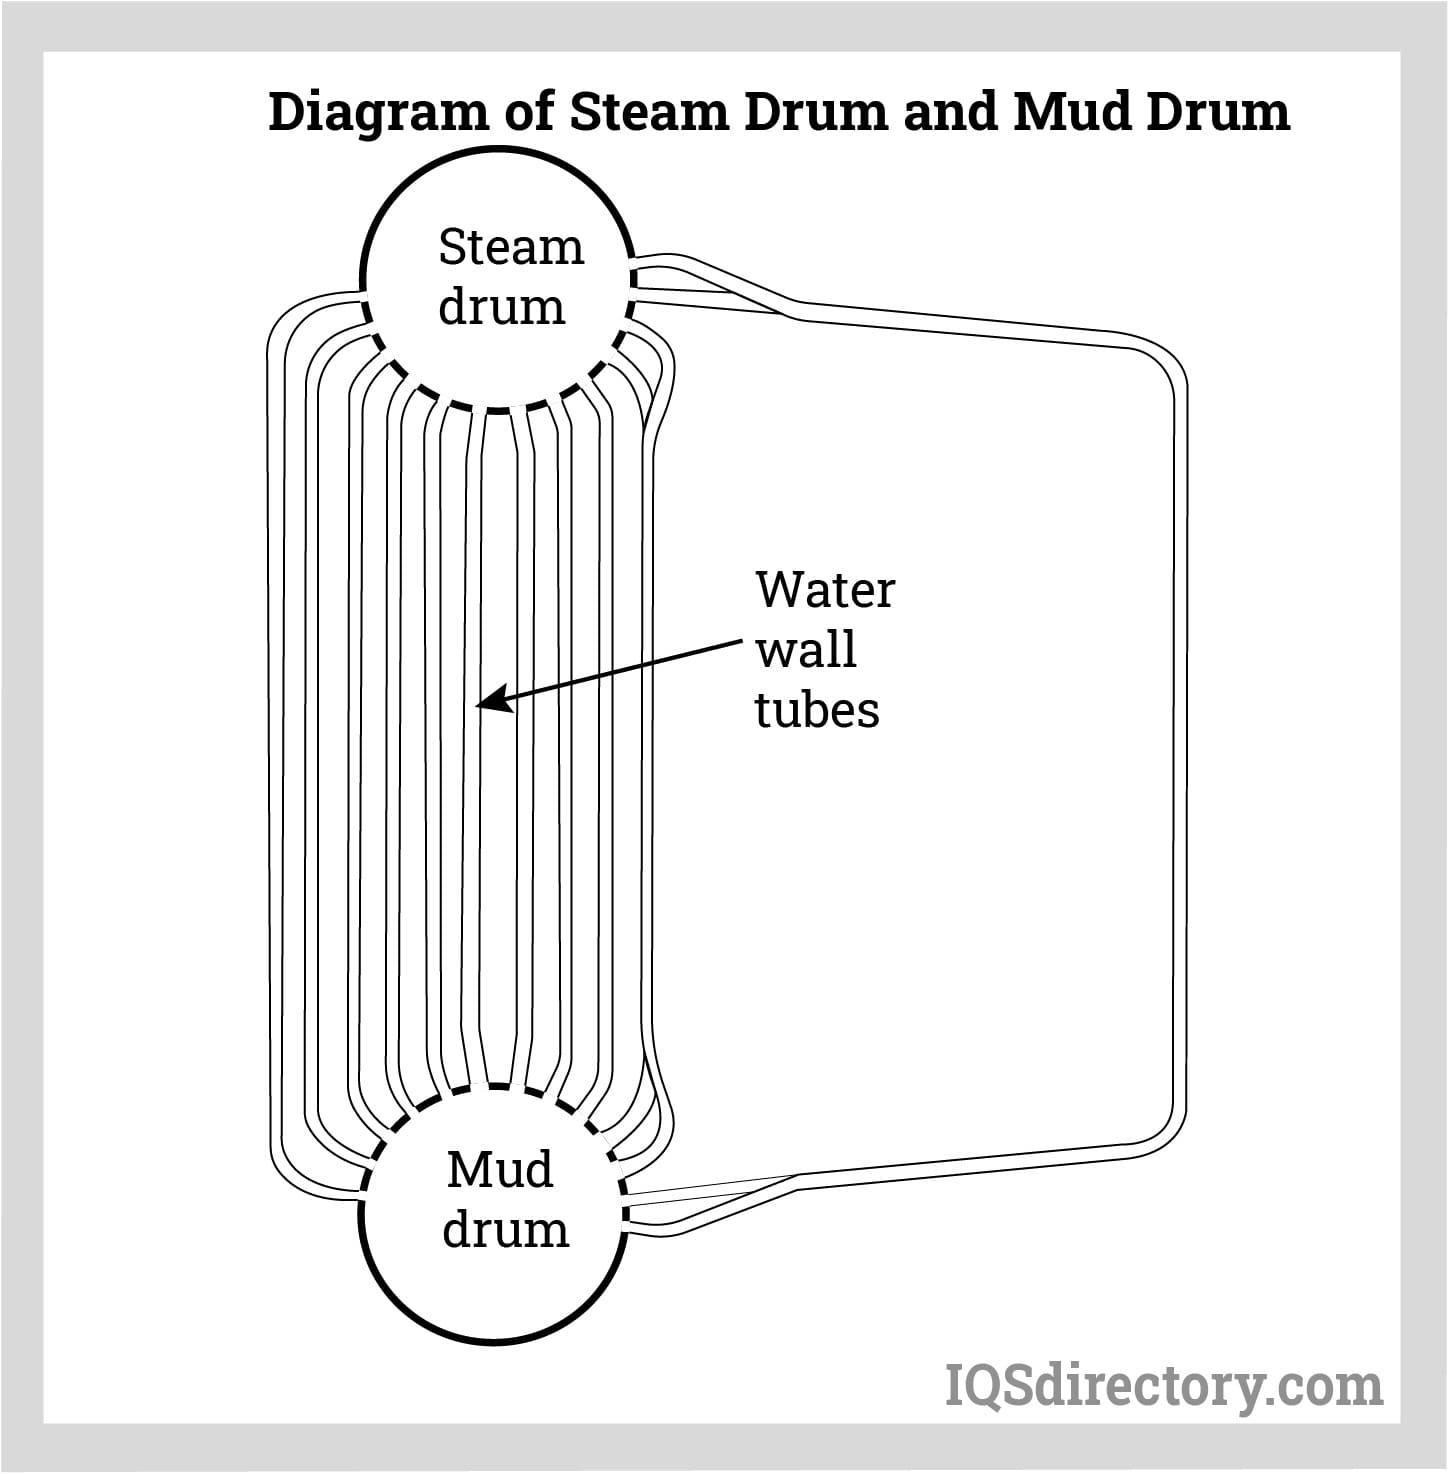 Diagram of Steam Drum and Mud Drum